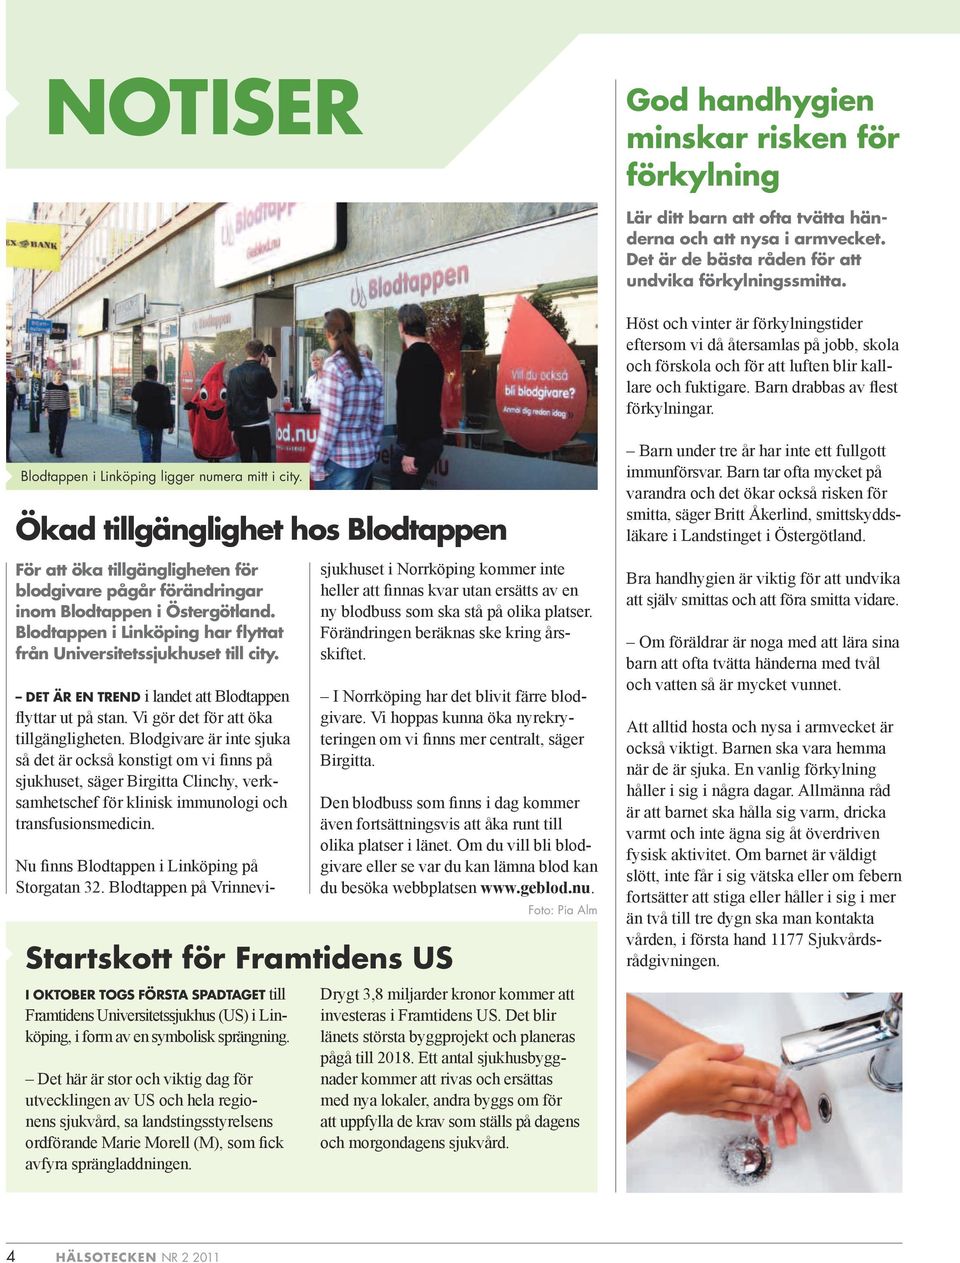 Blodtappen i Linköping ligger numera mitt i city. Ökad tillgänglighet hos Blodtappen För att öka tillgängligheten för blodgivare pågår förändringar inom Blodtappen i Östergötland.